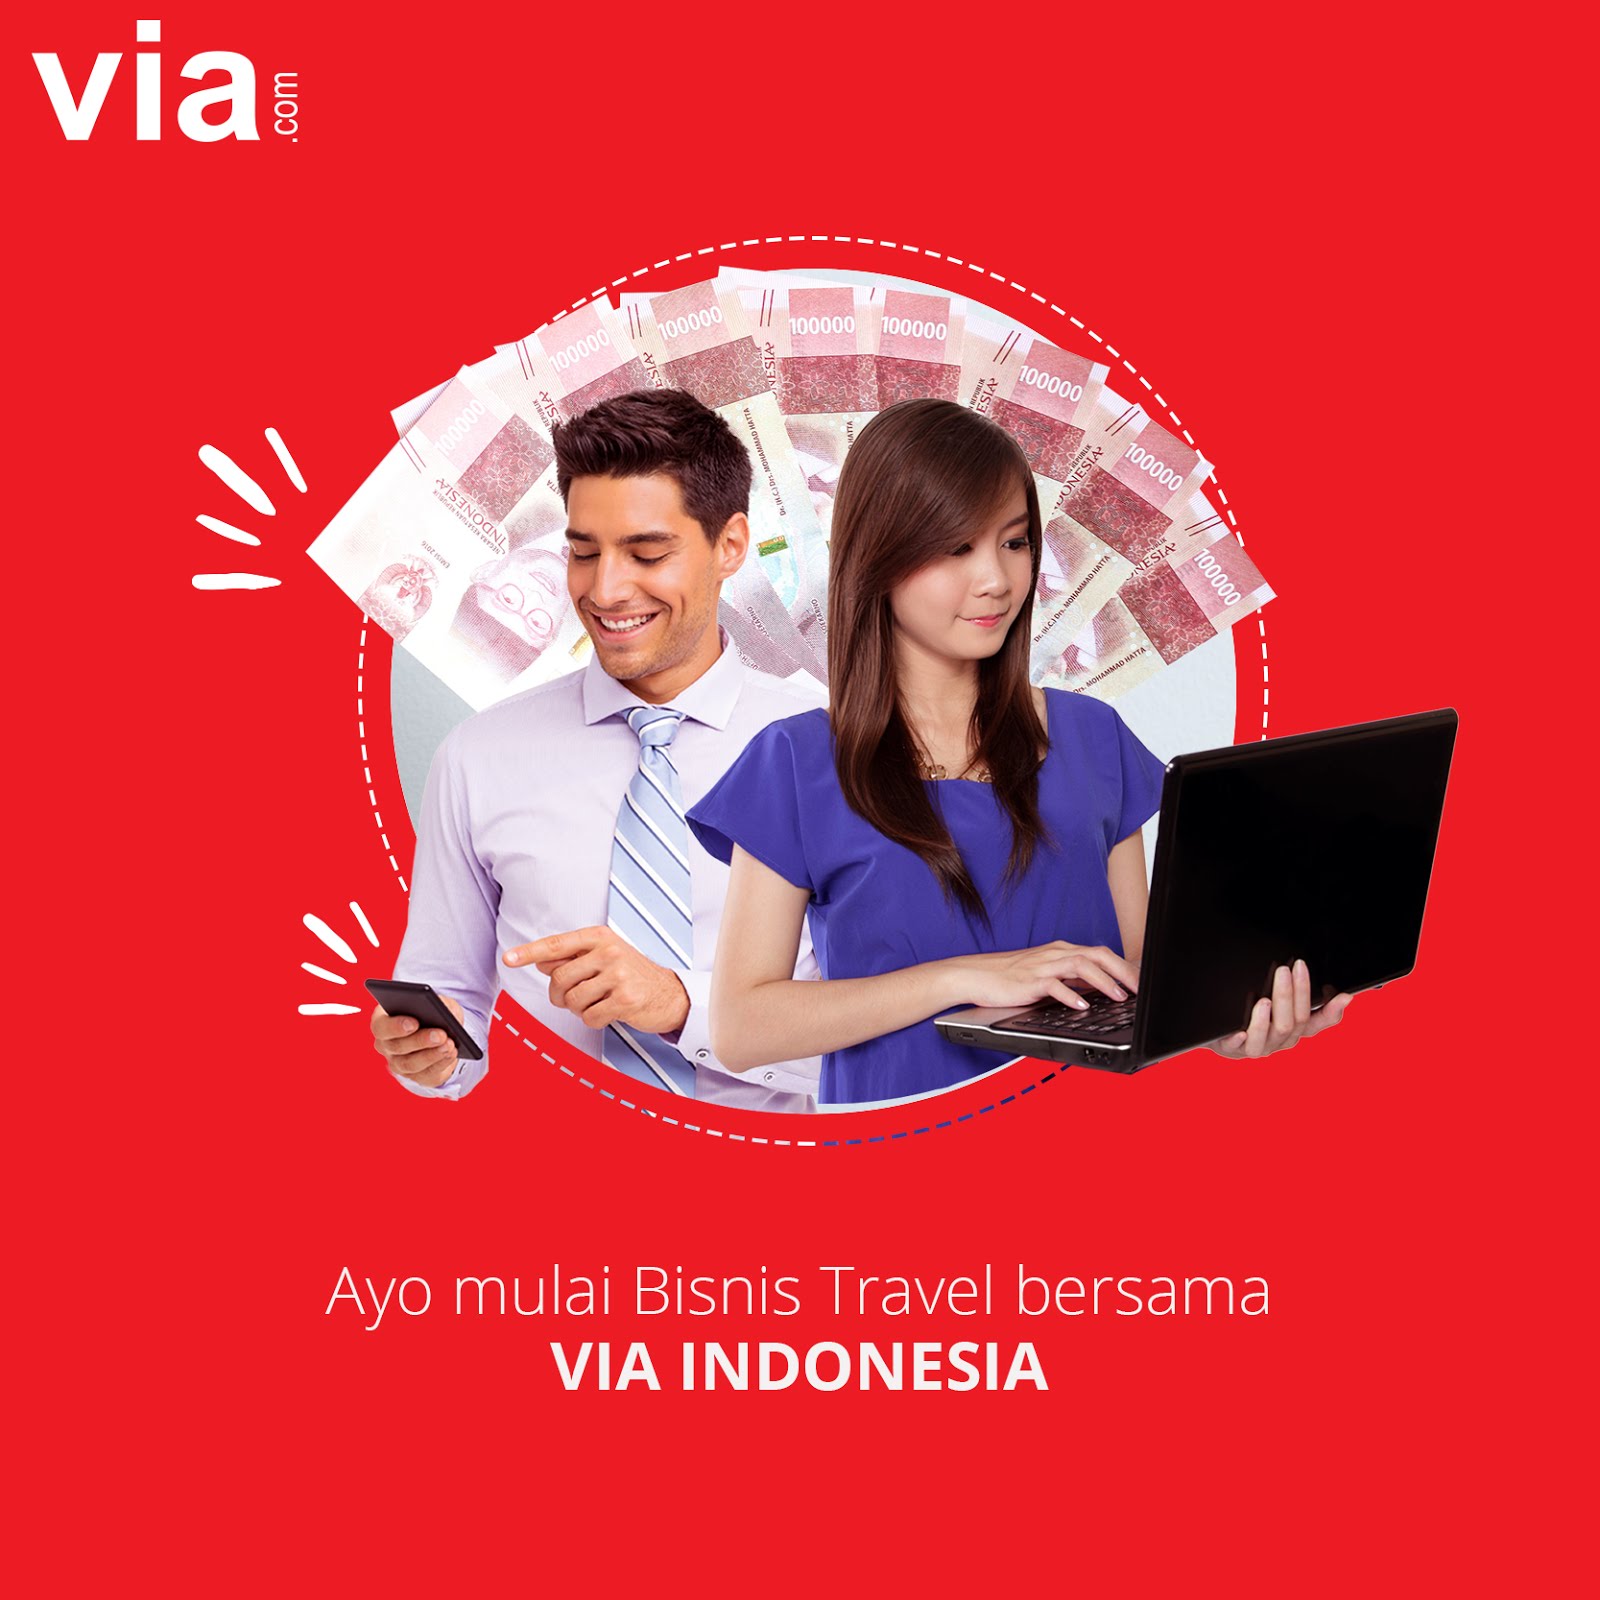 Berbisnis Travel ala “Millenial” di via.com Indonesia